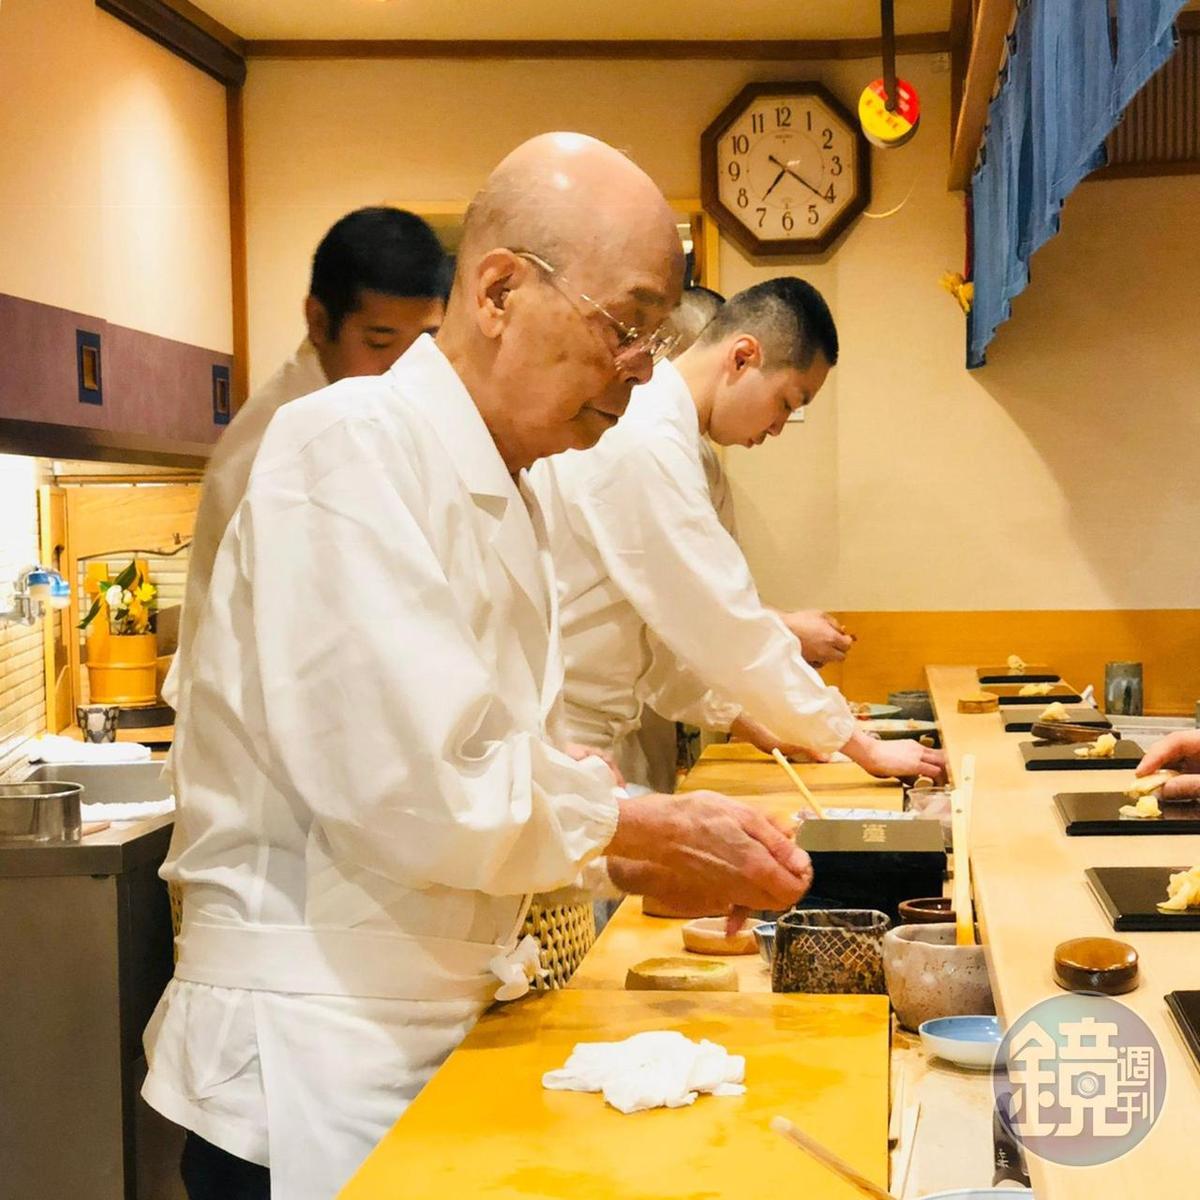 已高齡94歲的小野二郎至今依然每天在板前捏製壽司。